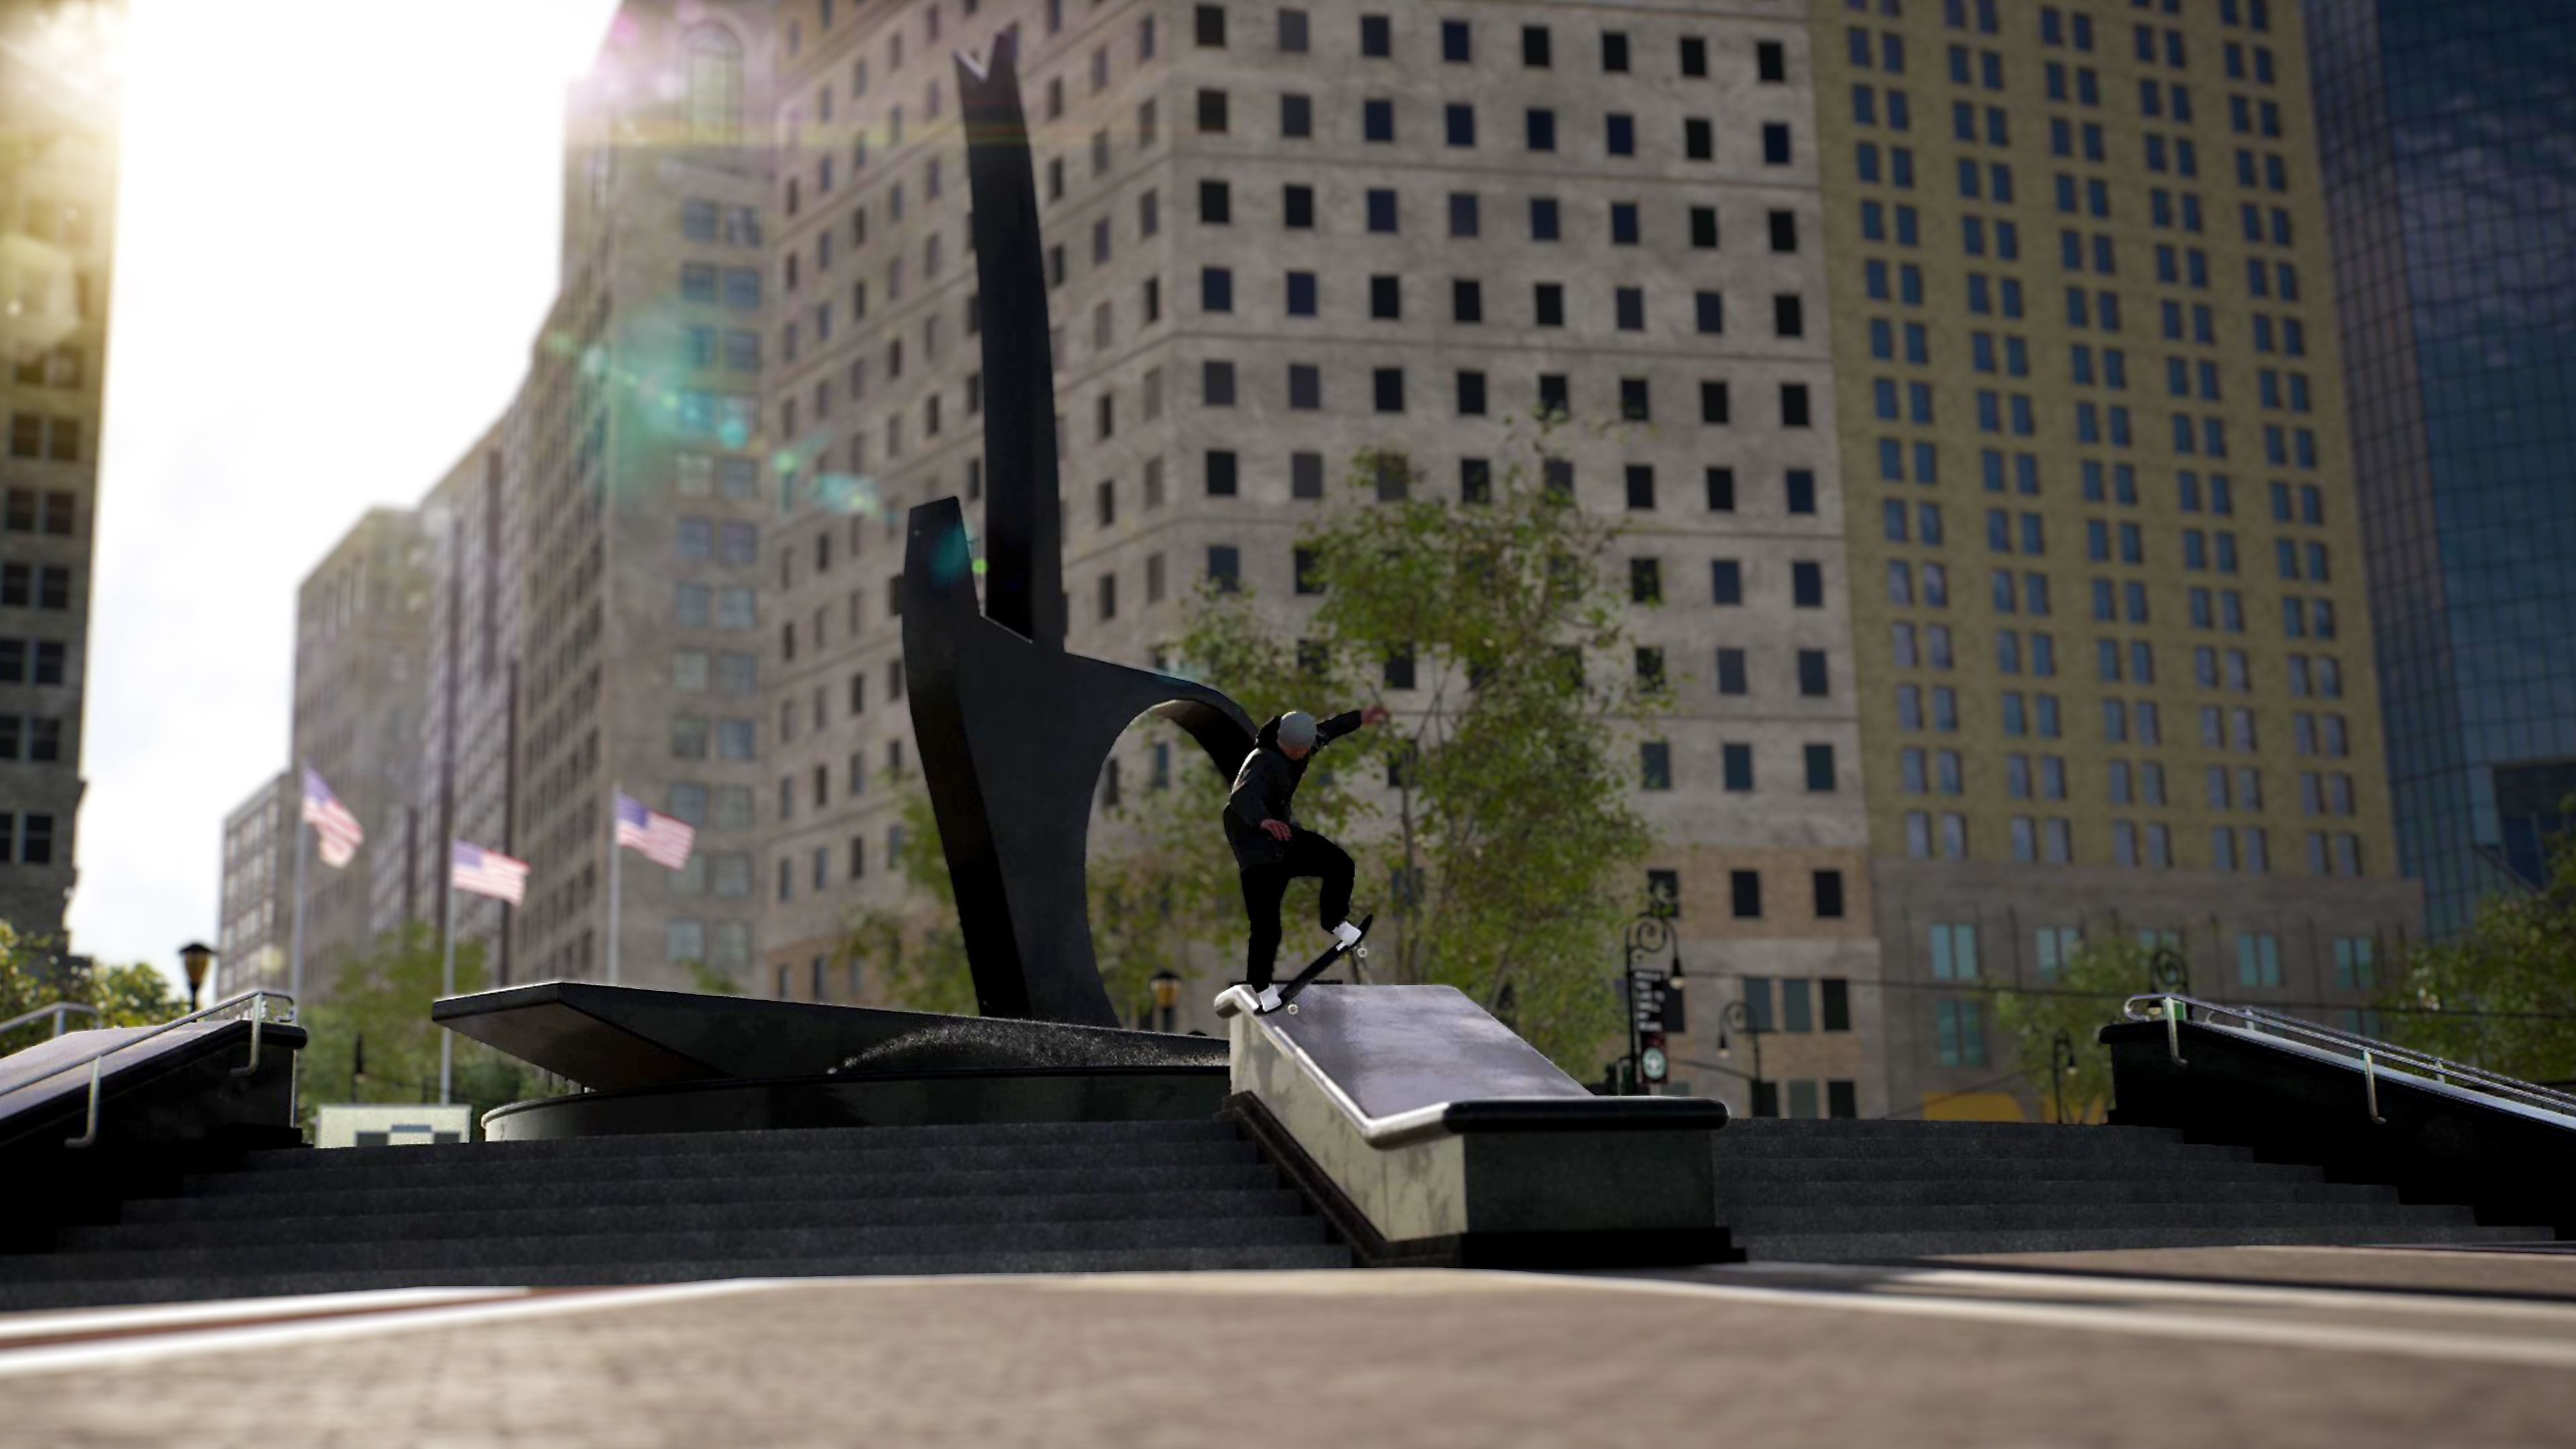 Session: Skate Sim-screenshot van een skater die op een rand grindt op een stadsplein